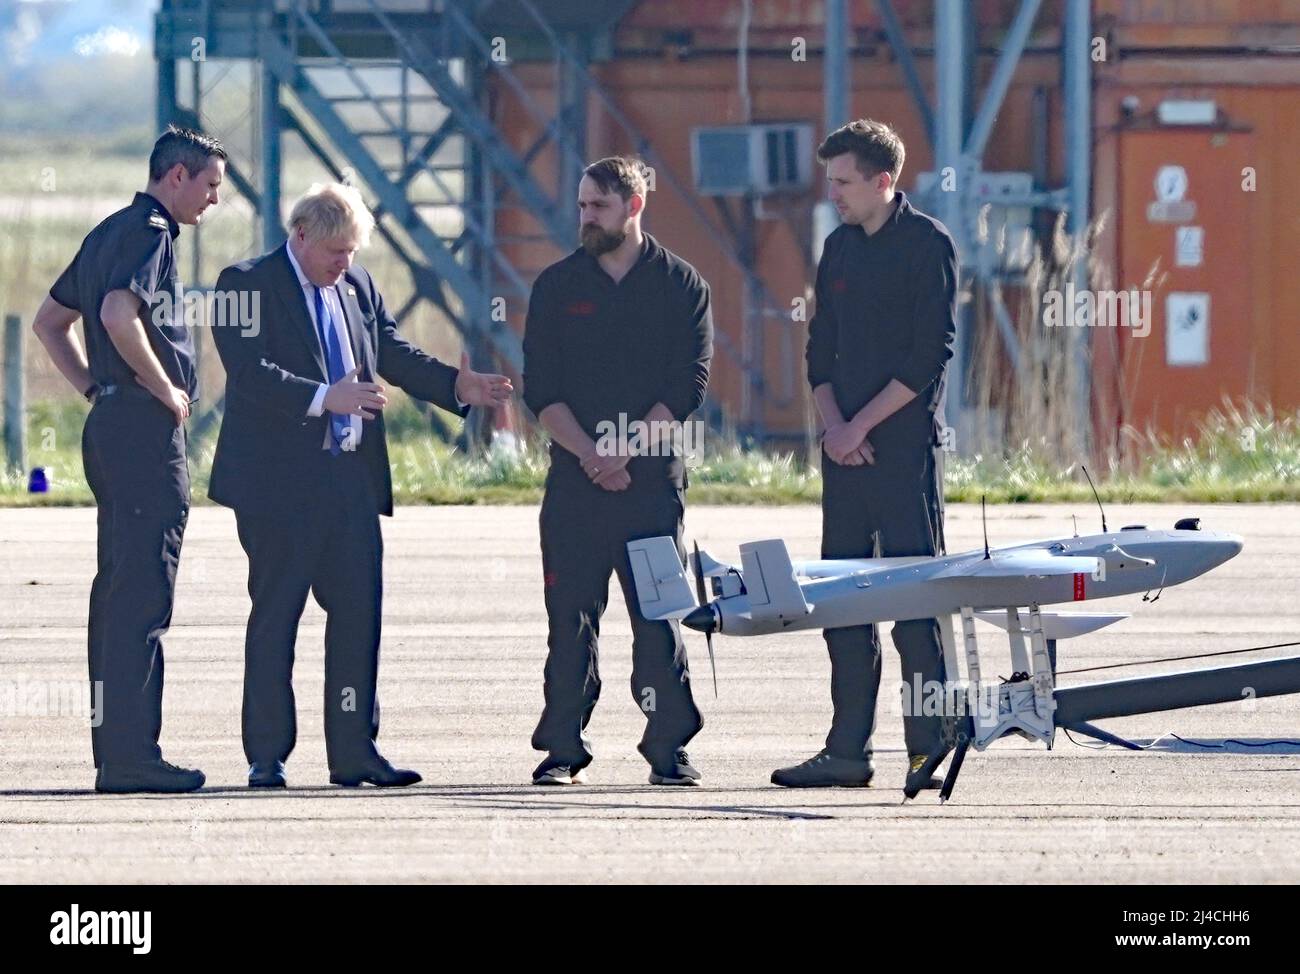 Premierminister Boris Johnson betrachtet eine Drohne während eines Besuchs auf dem Flughafen Lydd in Kent. Bilddatum: Donnerstag, 14. April 2022. Stockfoto